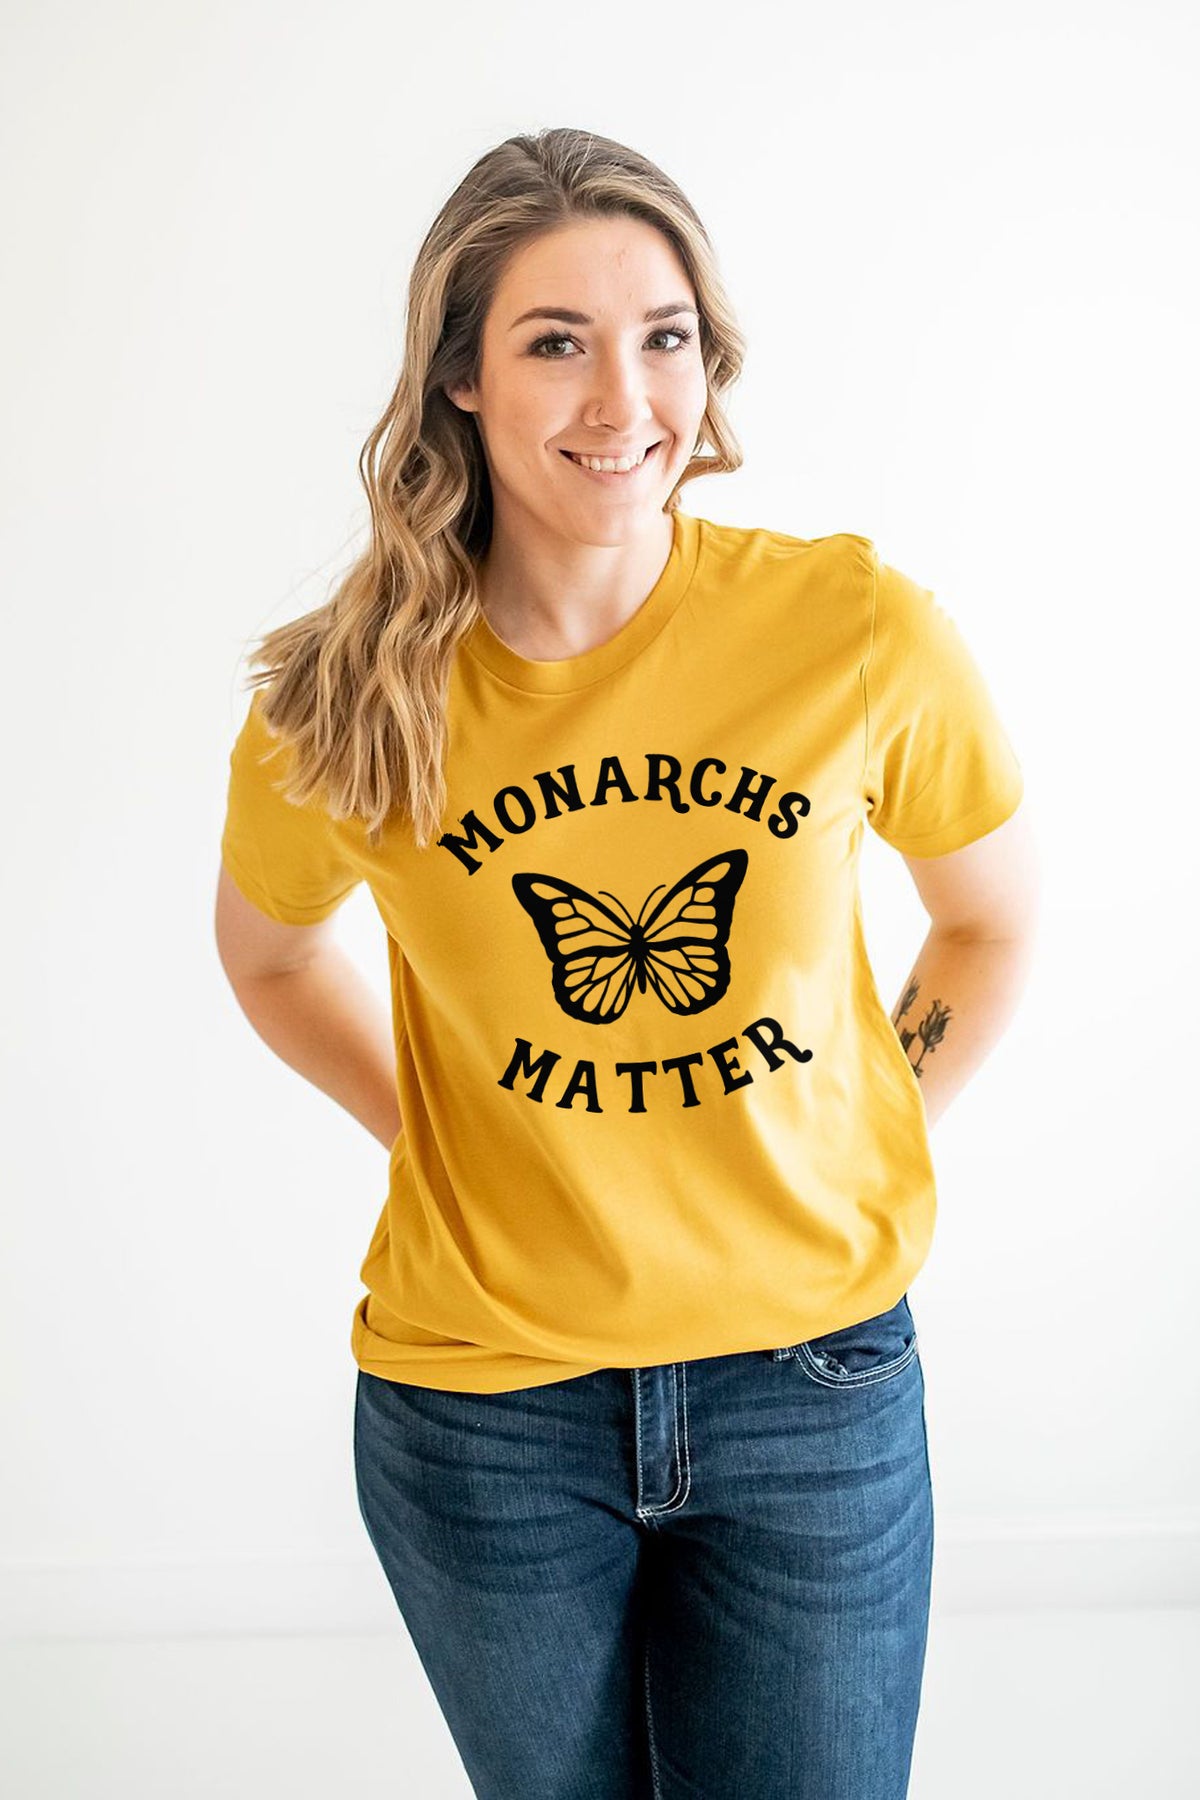 Monarchs Matter Shirt